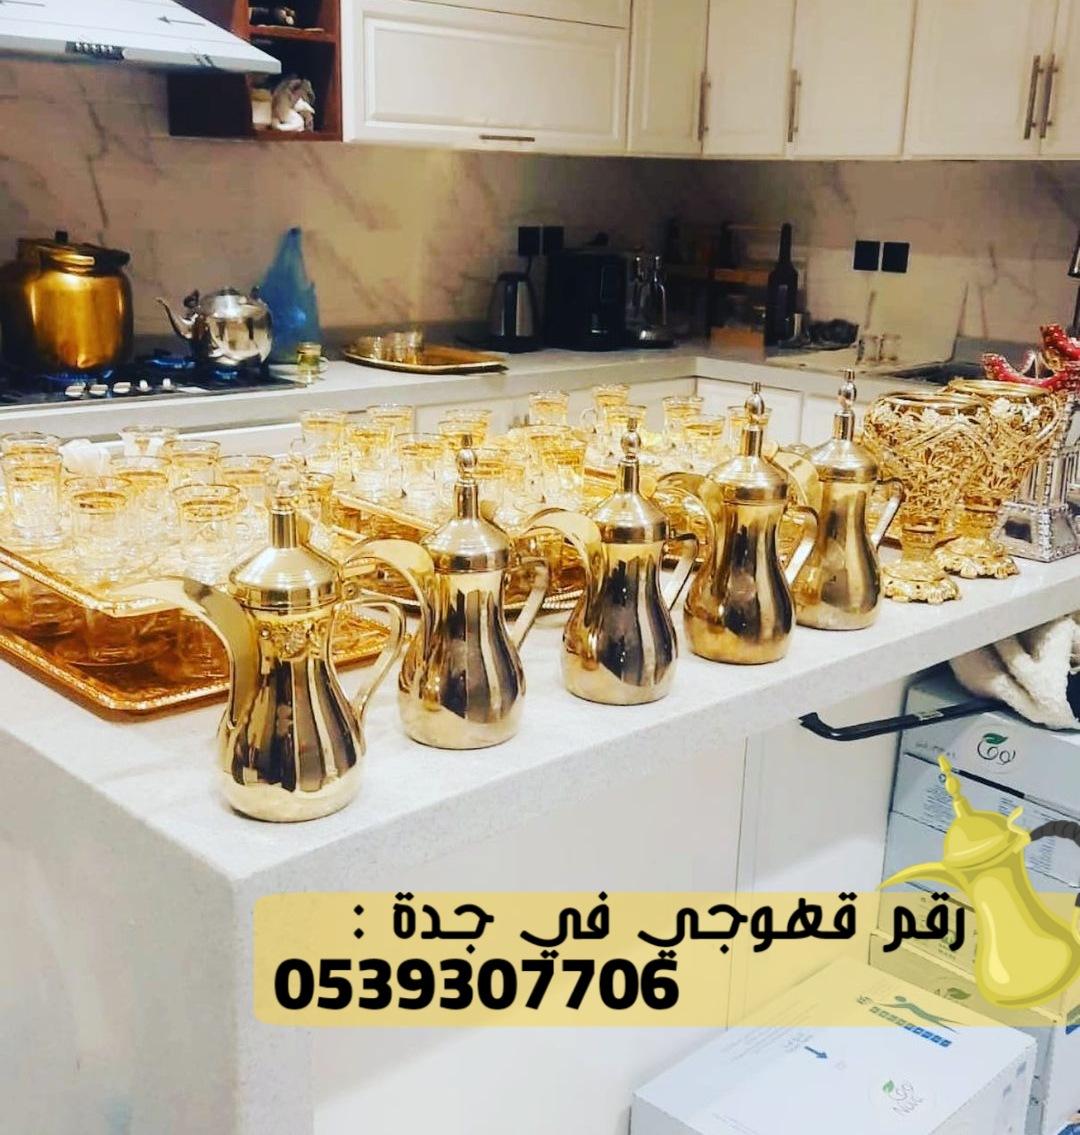 صبابين قهوه و مباشرين في جدة, 0539307706 331363141